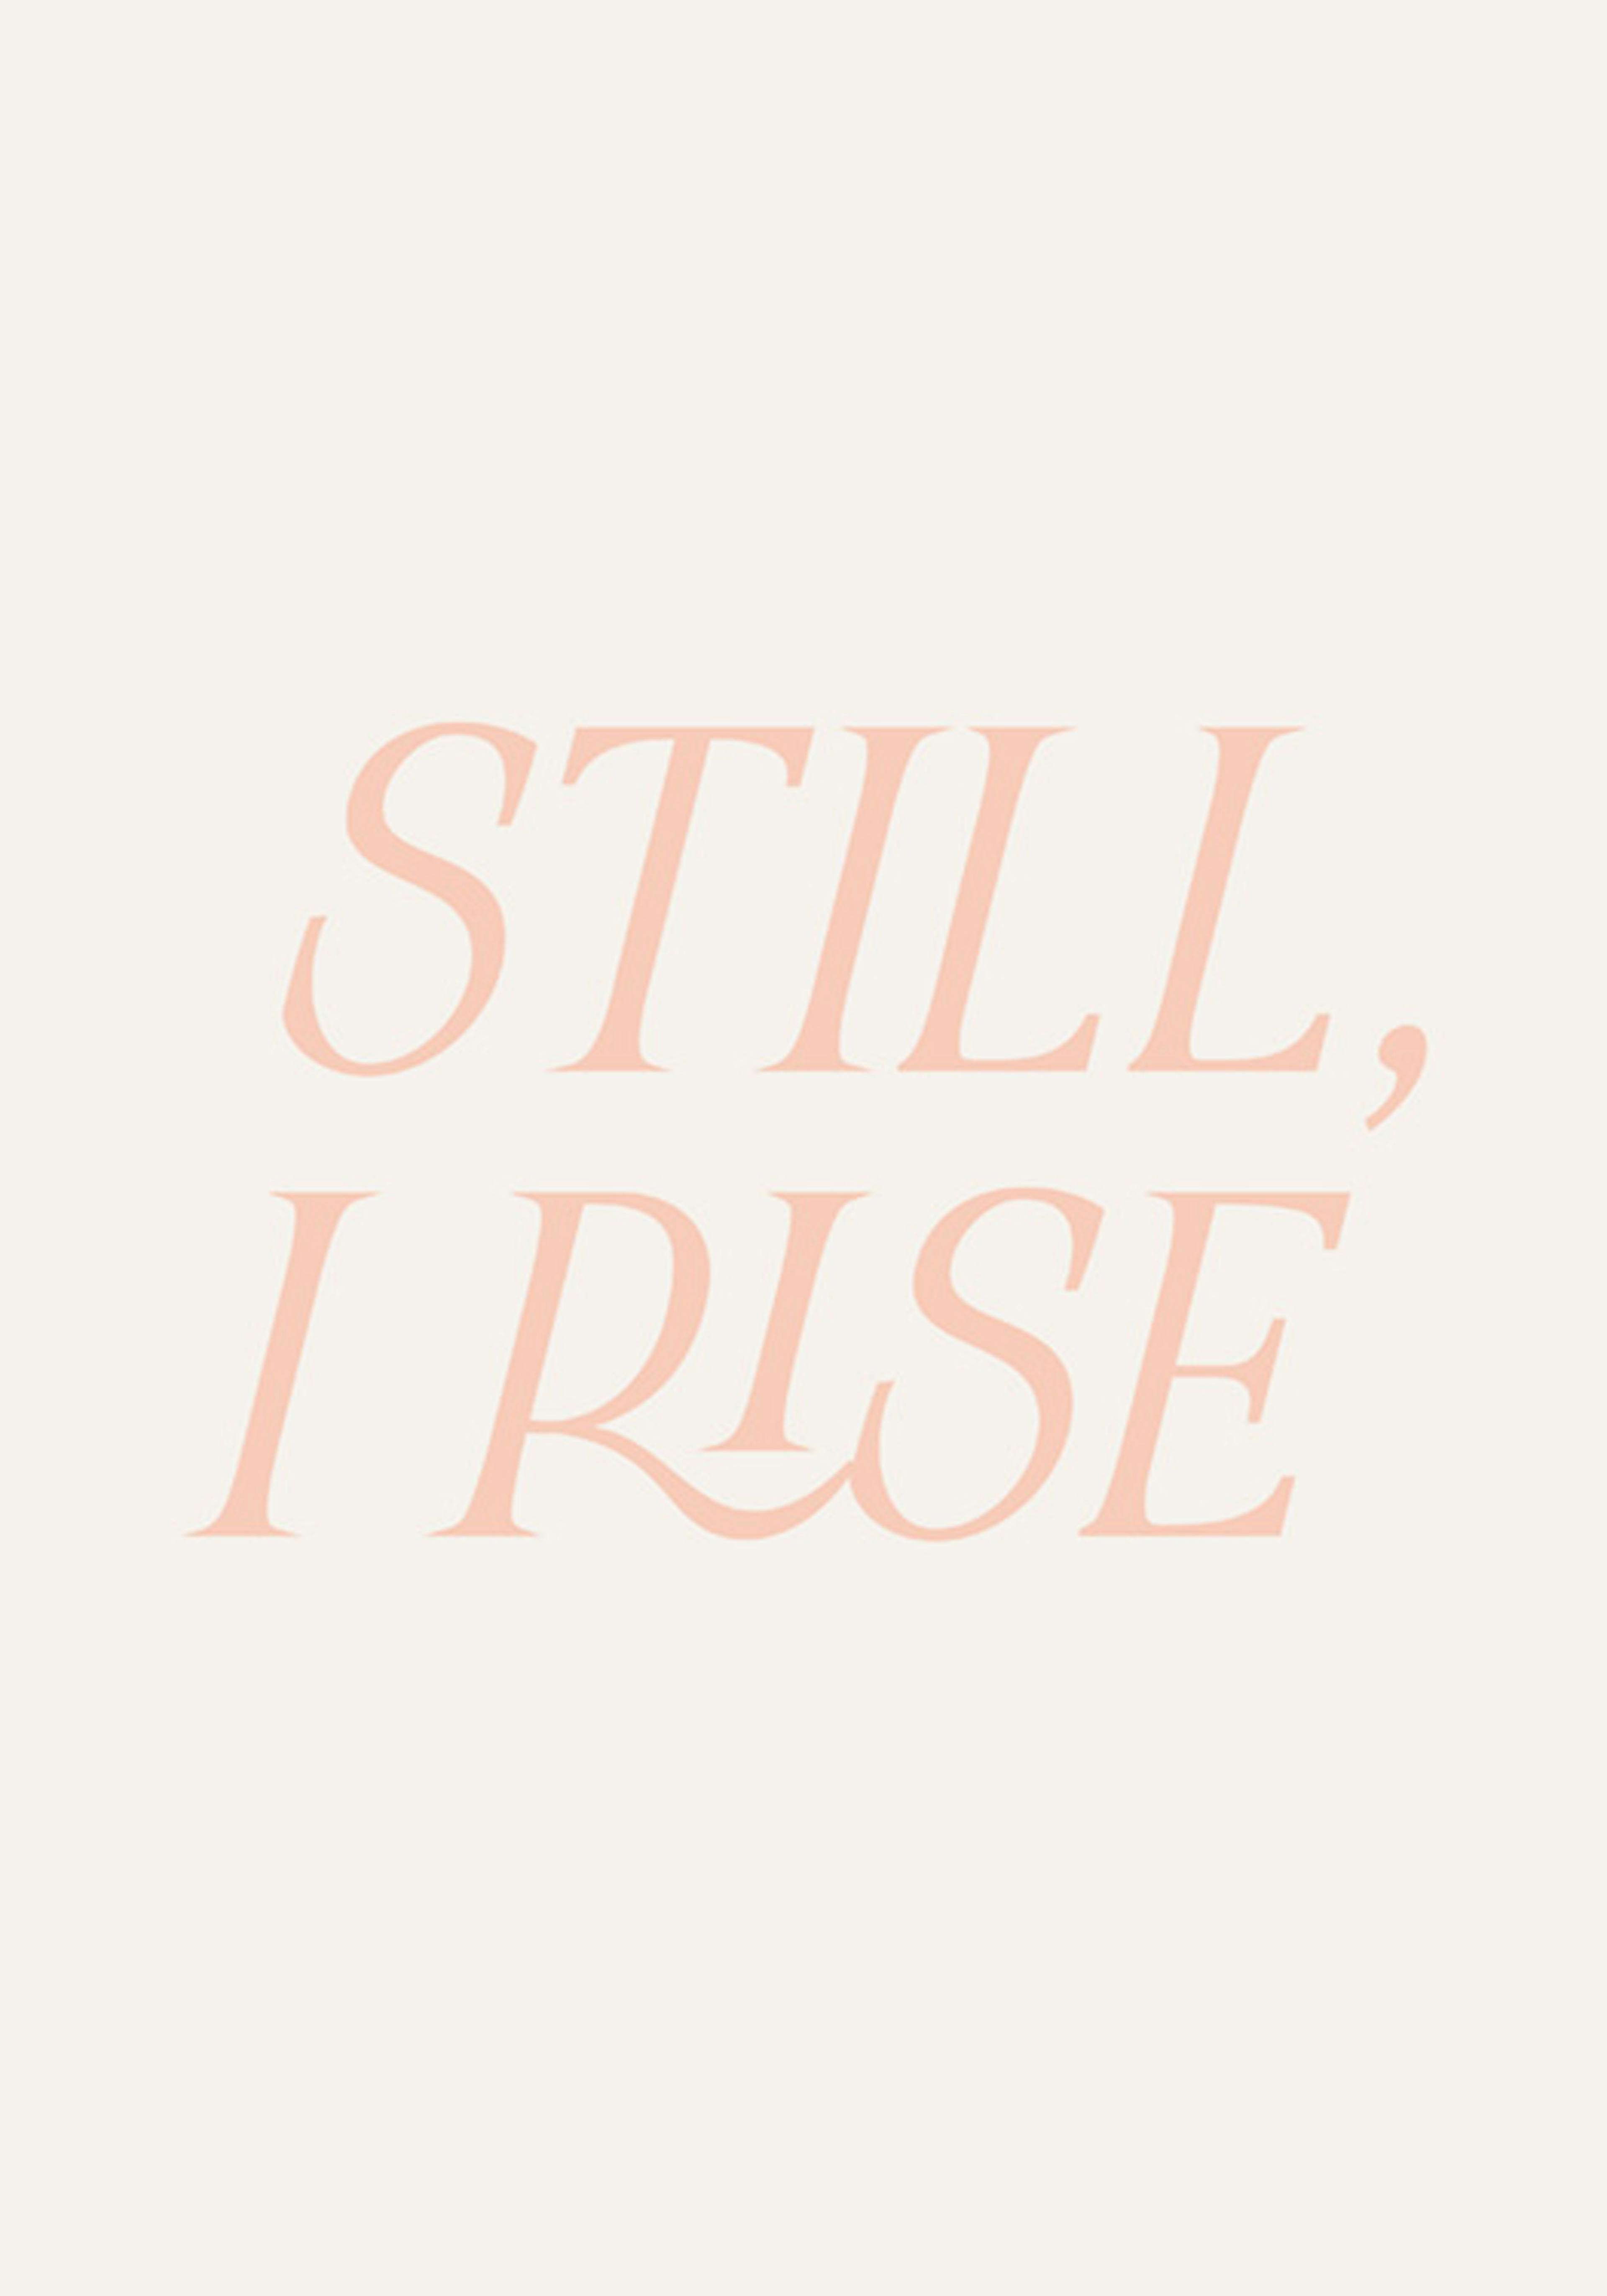 Still I Rise Poster 0